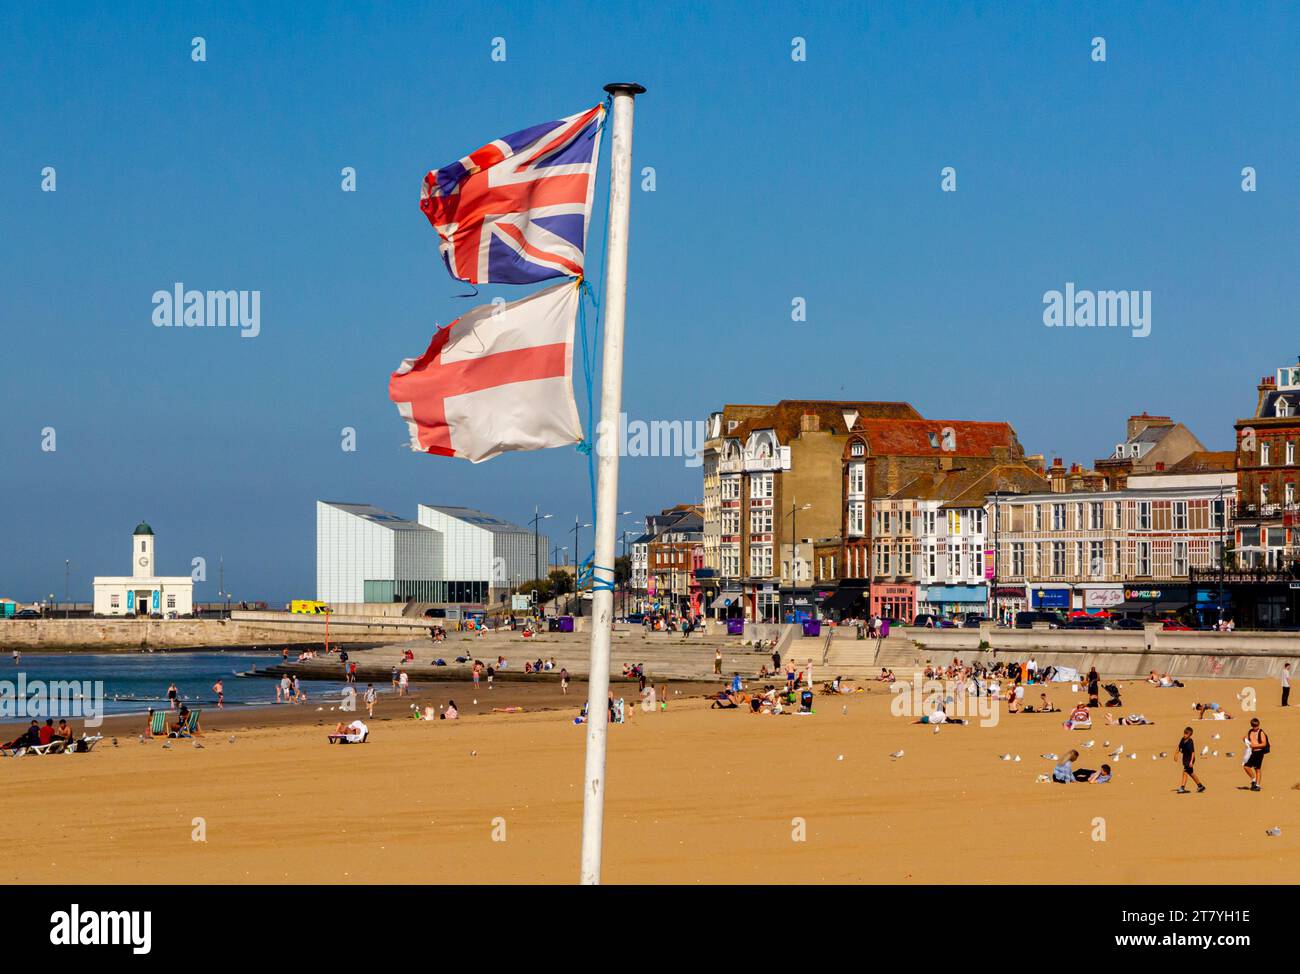 Sandstrand und Promenade in Margate, einem Badeort an der Küste von Kent im Südosten Englands, Großbritannien, mit zerrissenen englischen und britischen Flaggen an einem Pol. Stockfoto